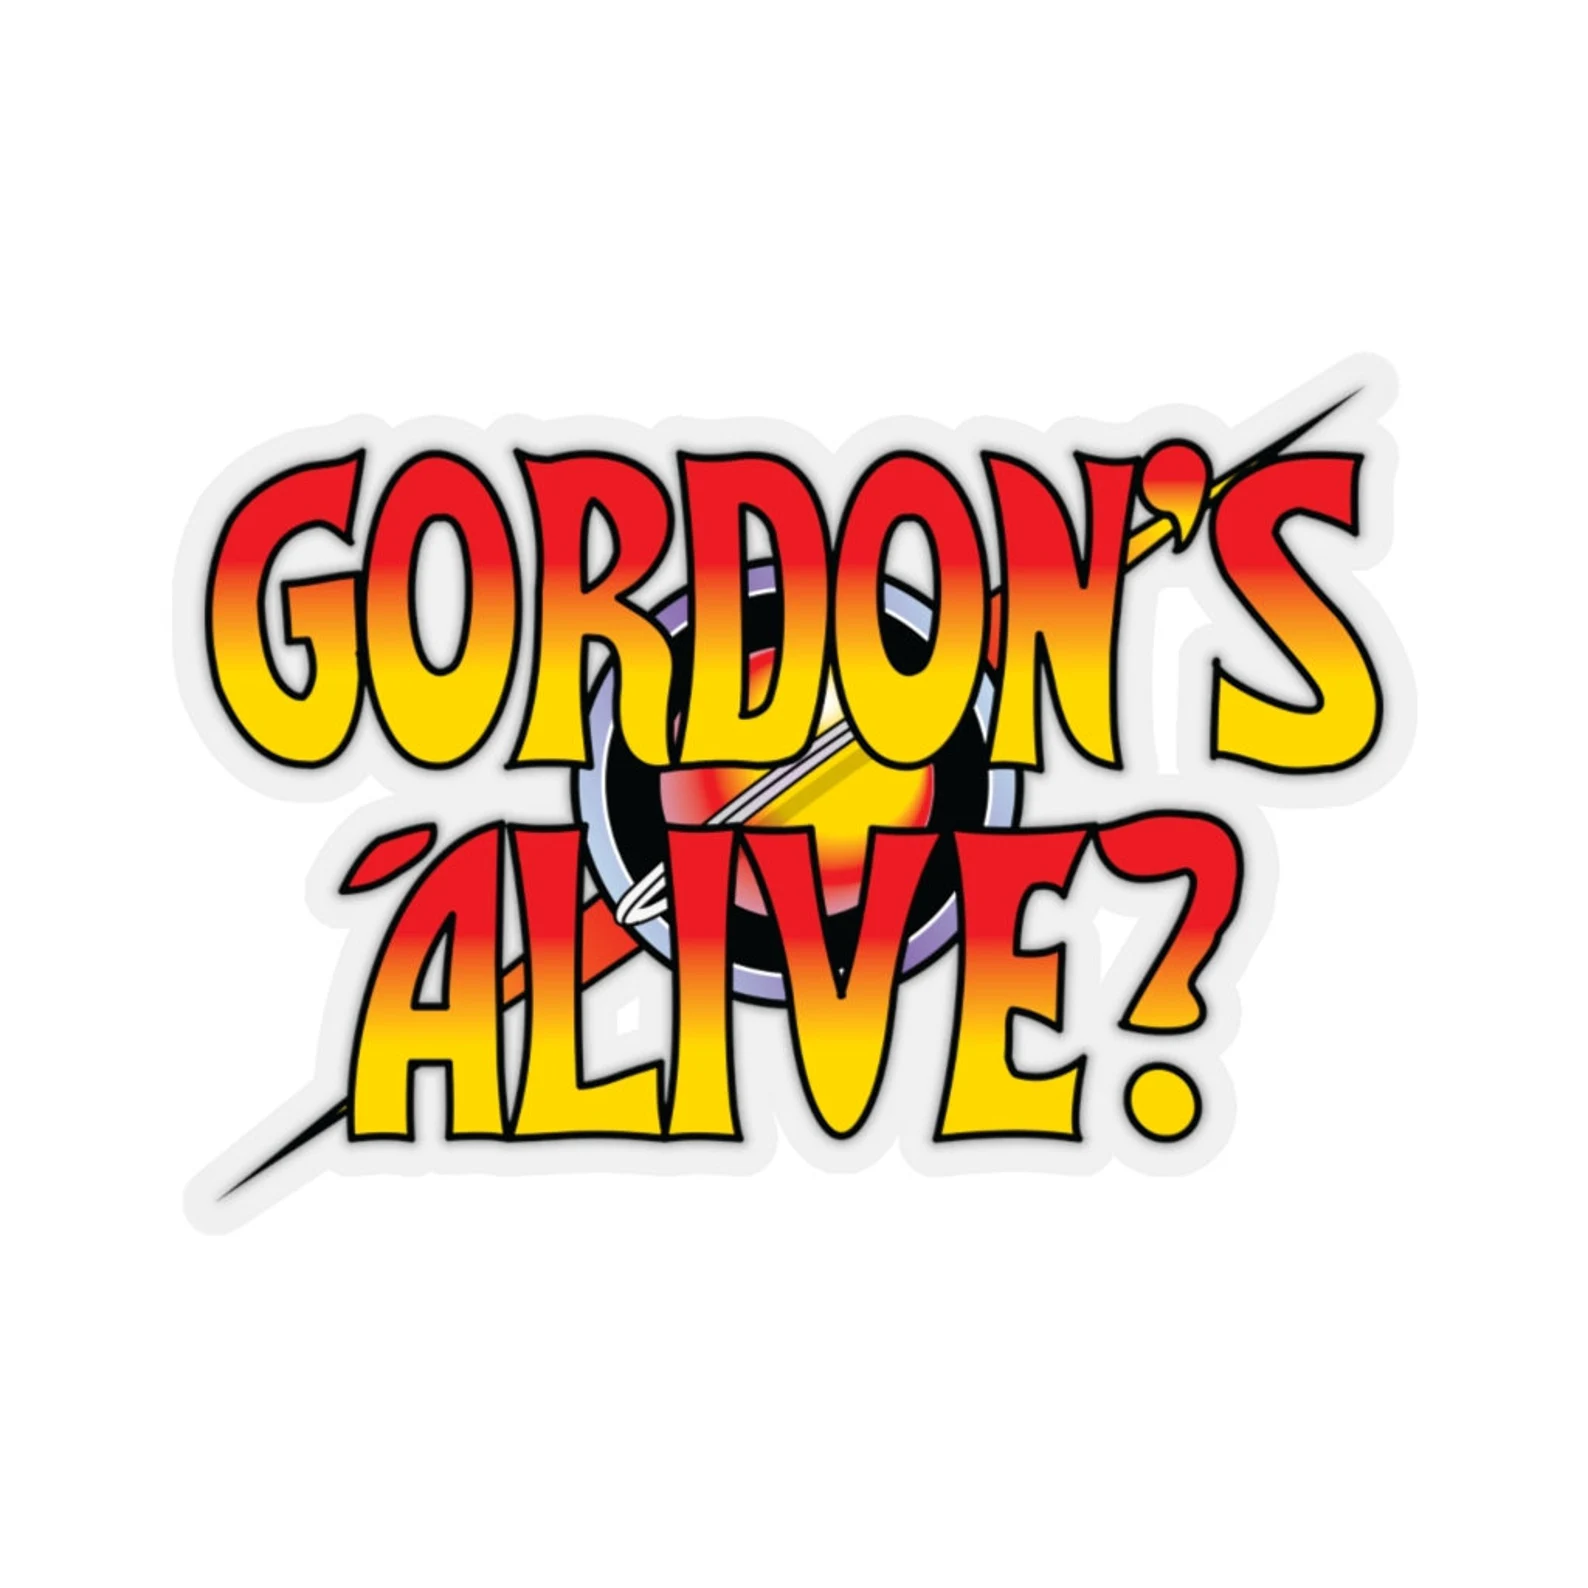 R. Gordon's Alive